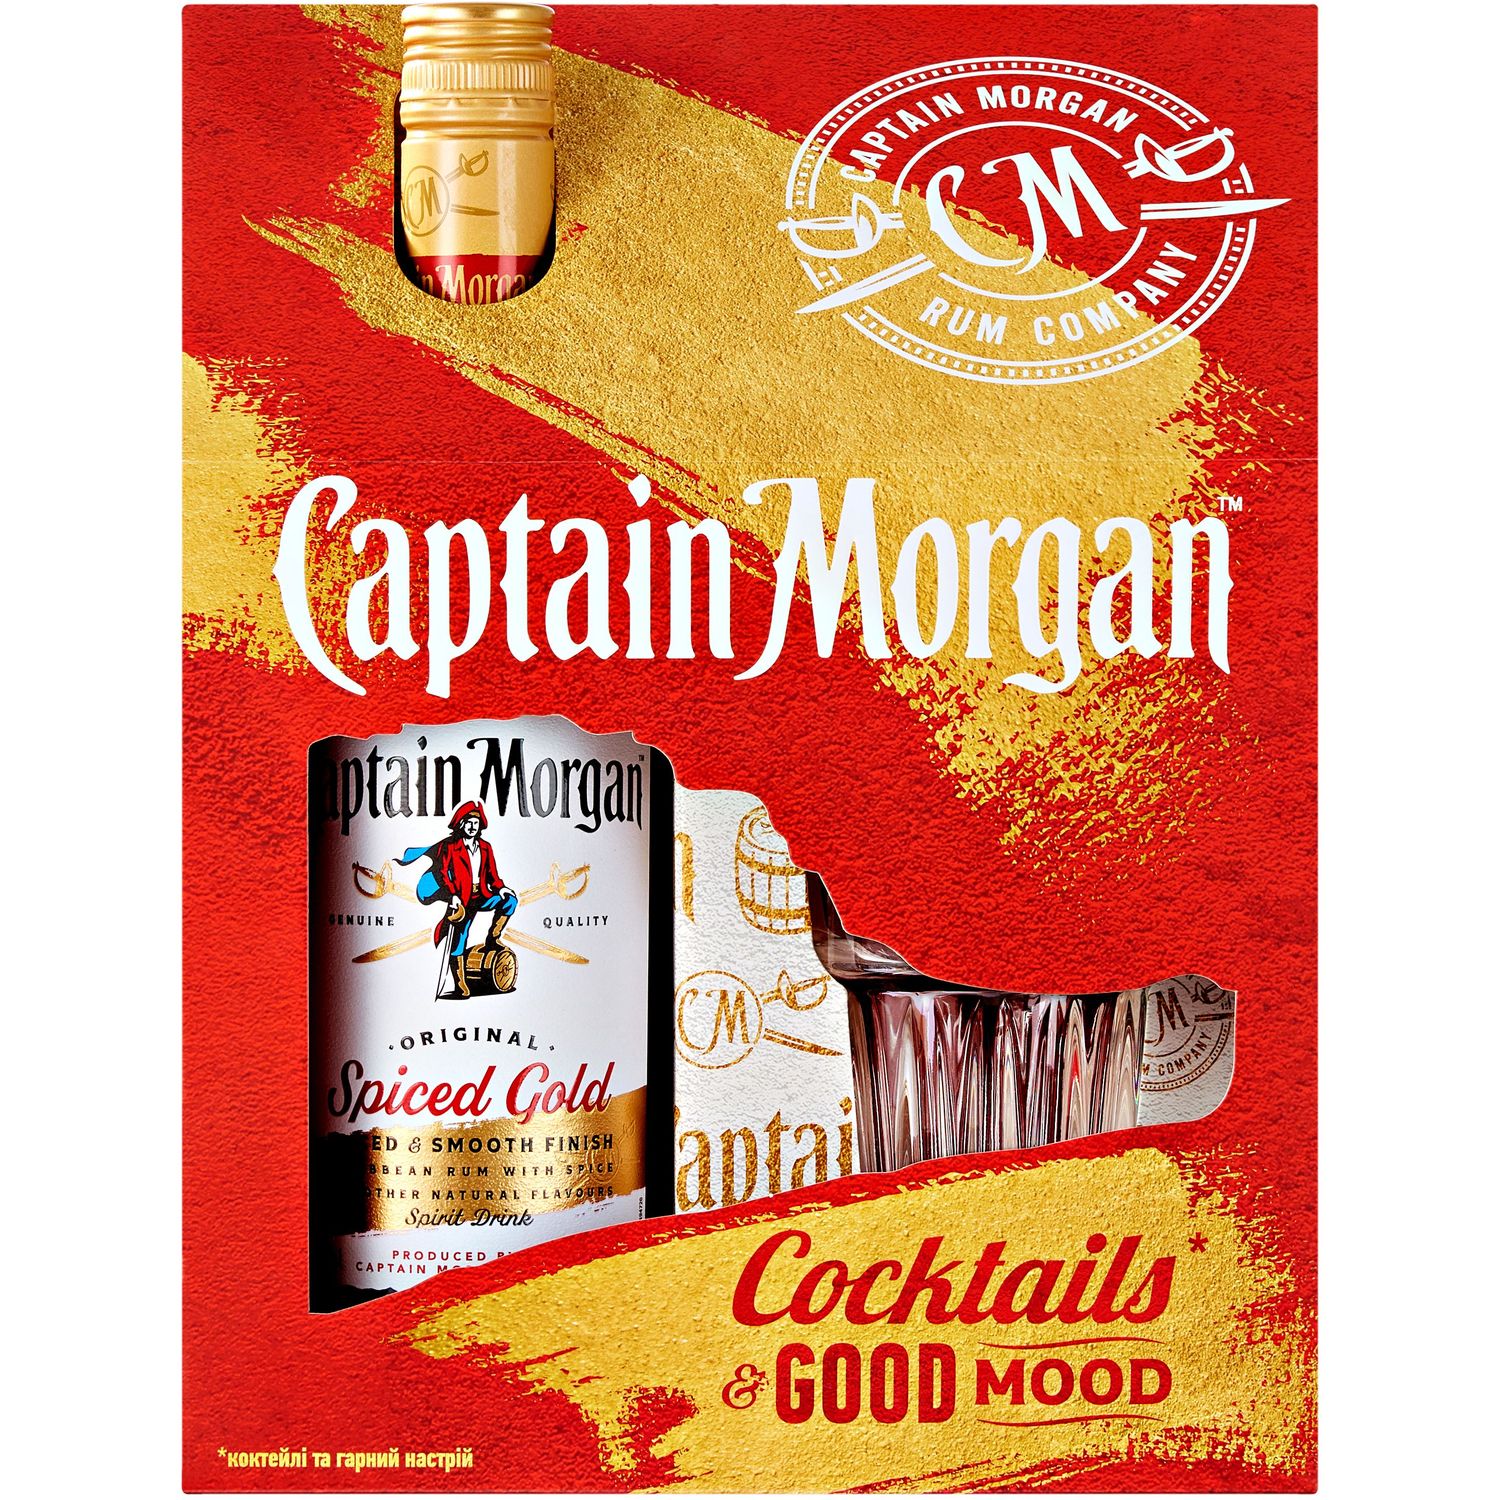 Ромовий напій Captain Morgan Spiced Gold, 35%, 0,7 л + склянка - фото 3